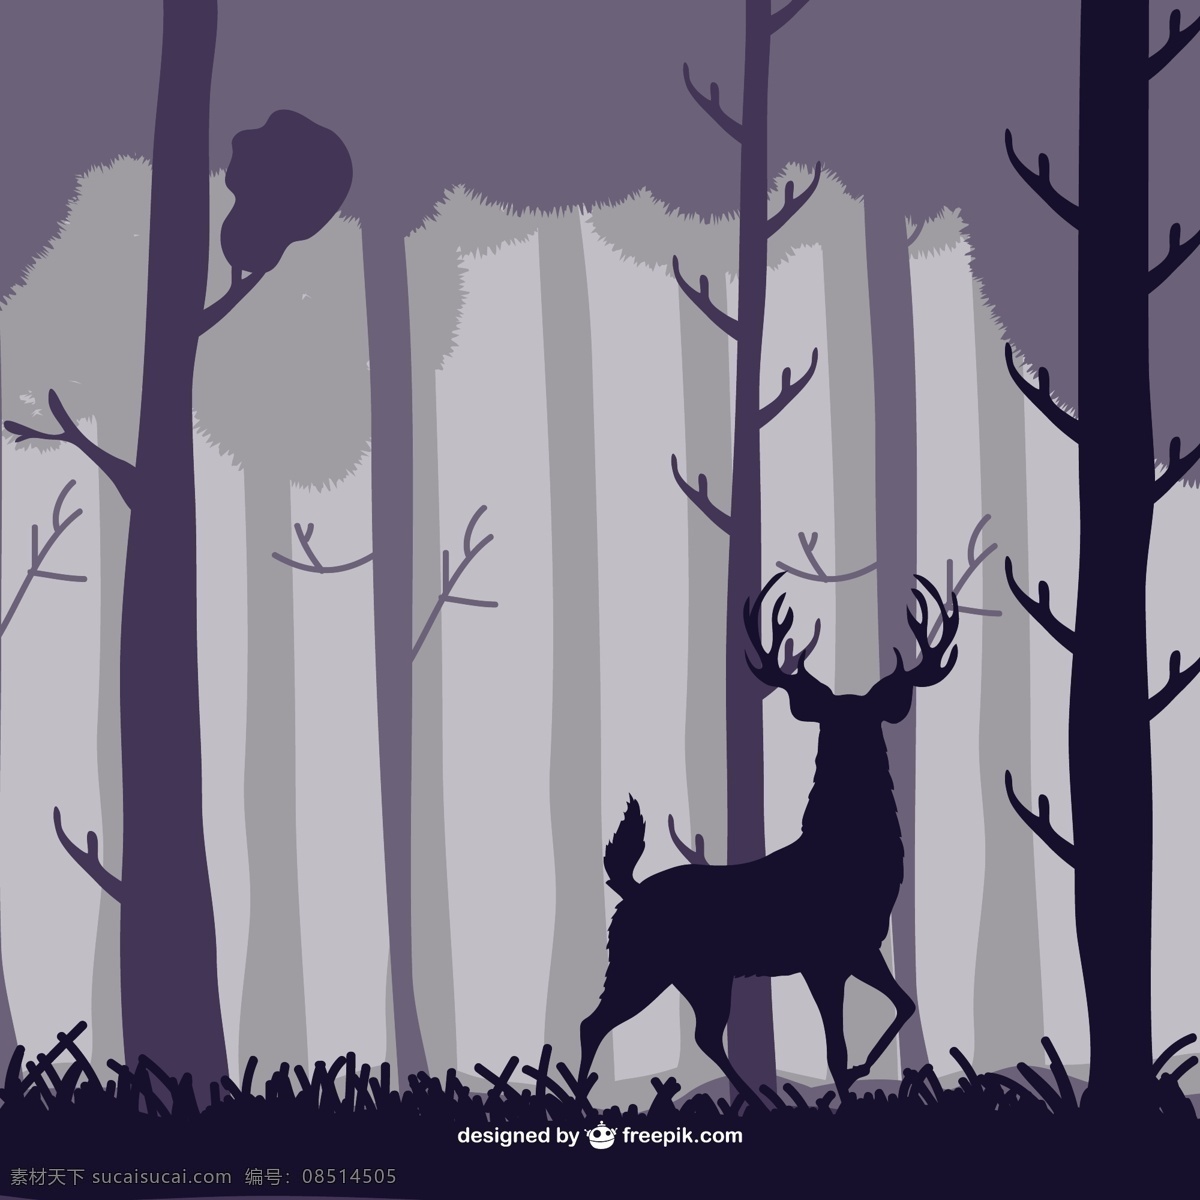 插画 梅花鹿 小鹿 卡通 森林动物 麋鹿 ai矢量图 装饰插画 印刷背景图 设计素材 矢量图